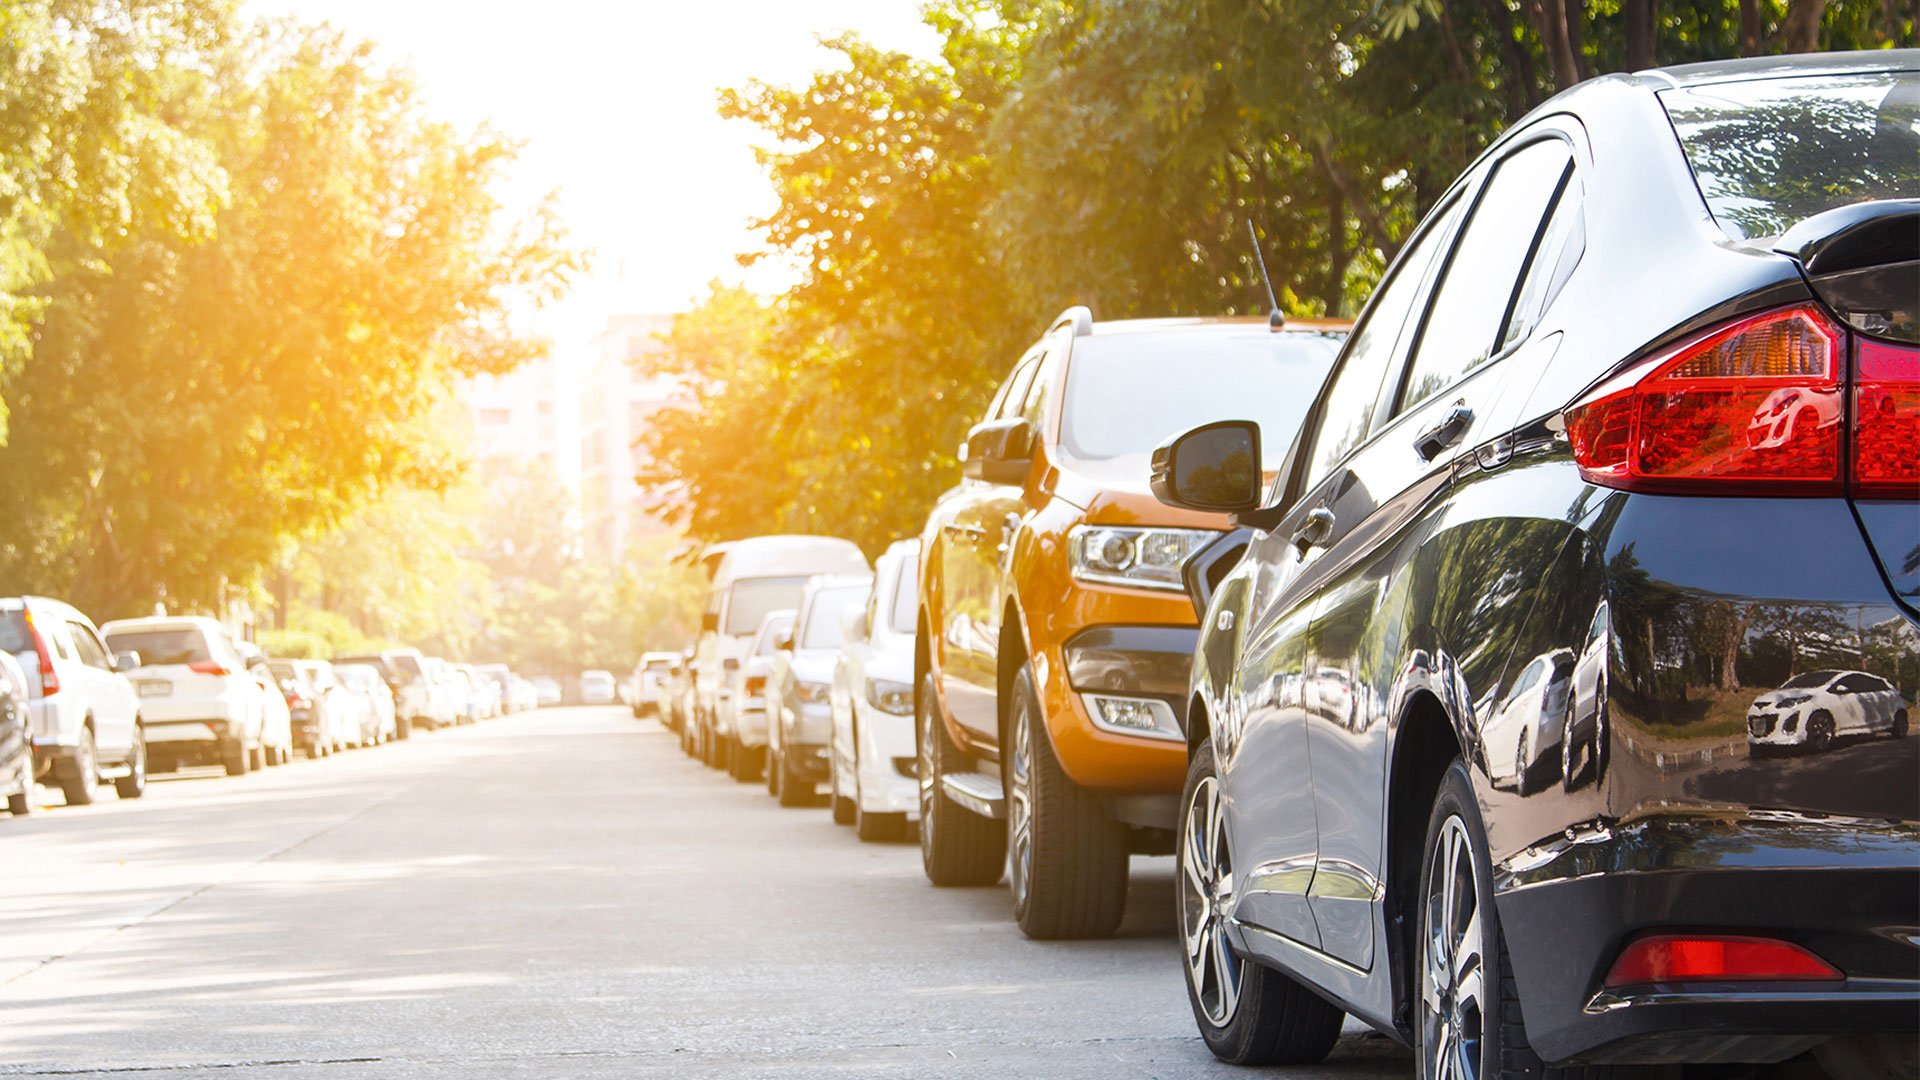 Τι συμβαίνει αν παρκάρεις ανάποδα στον δρόμο;